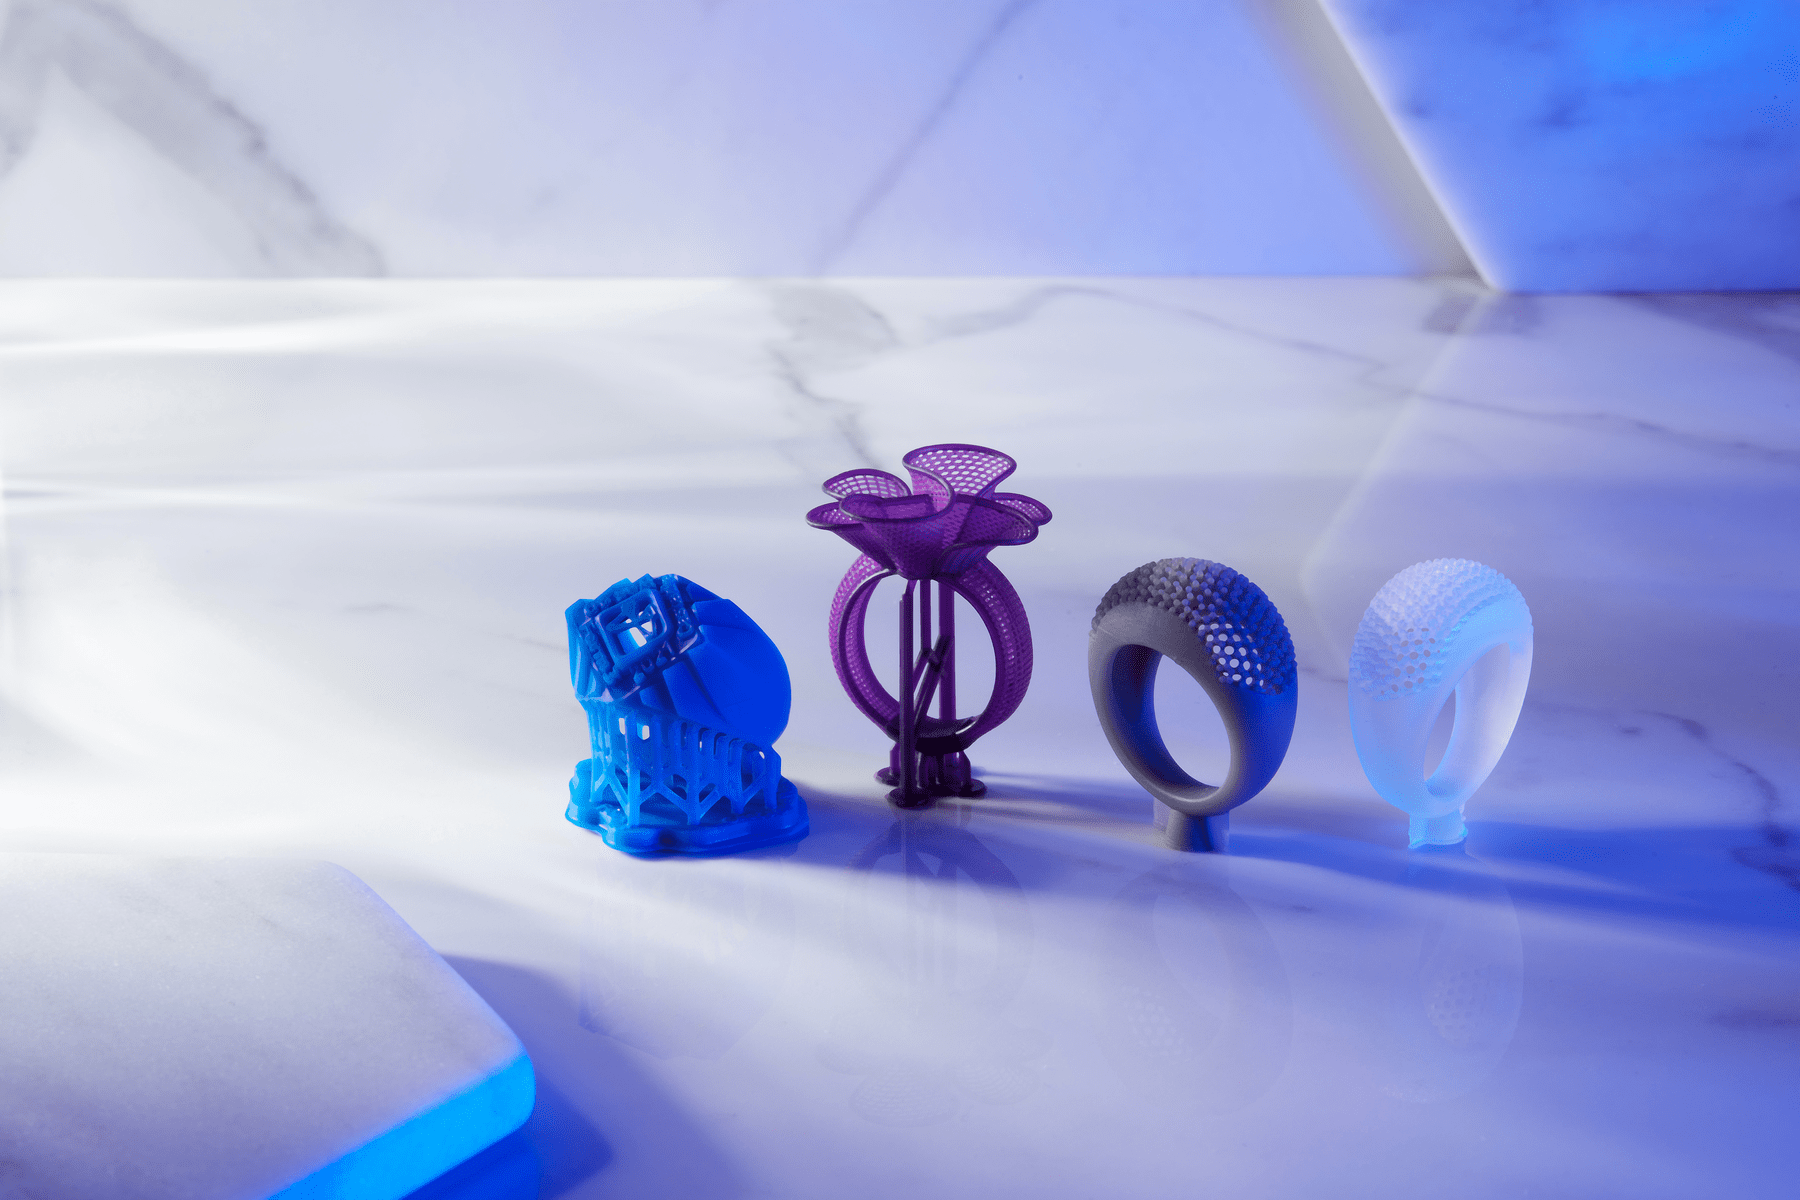 3D printed rings-Formlabs Jewerlly group